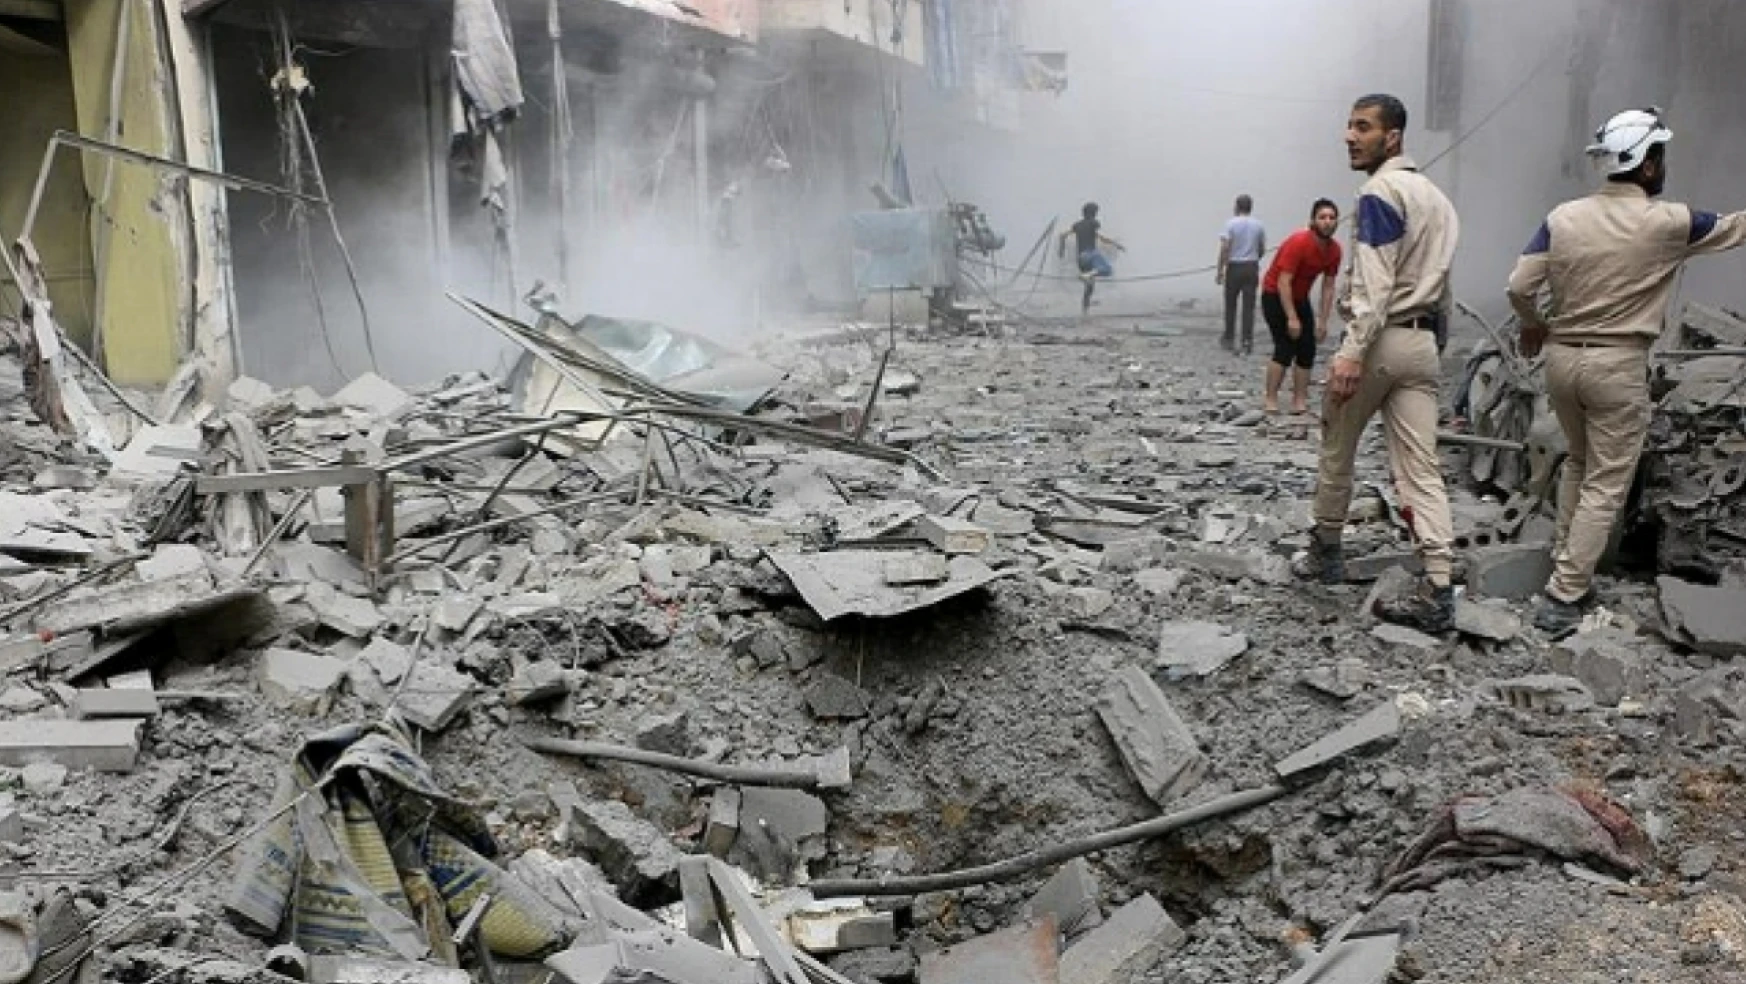 Suriye rejimi Halep kırsalını bombaladı: 3 ölü, 7 yaralı